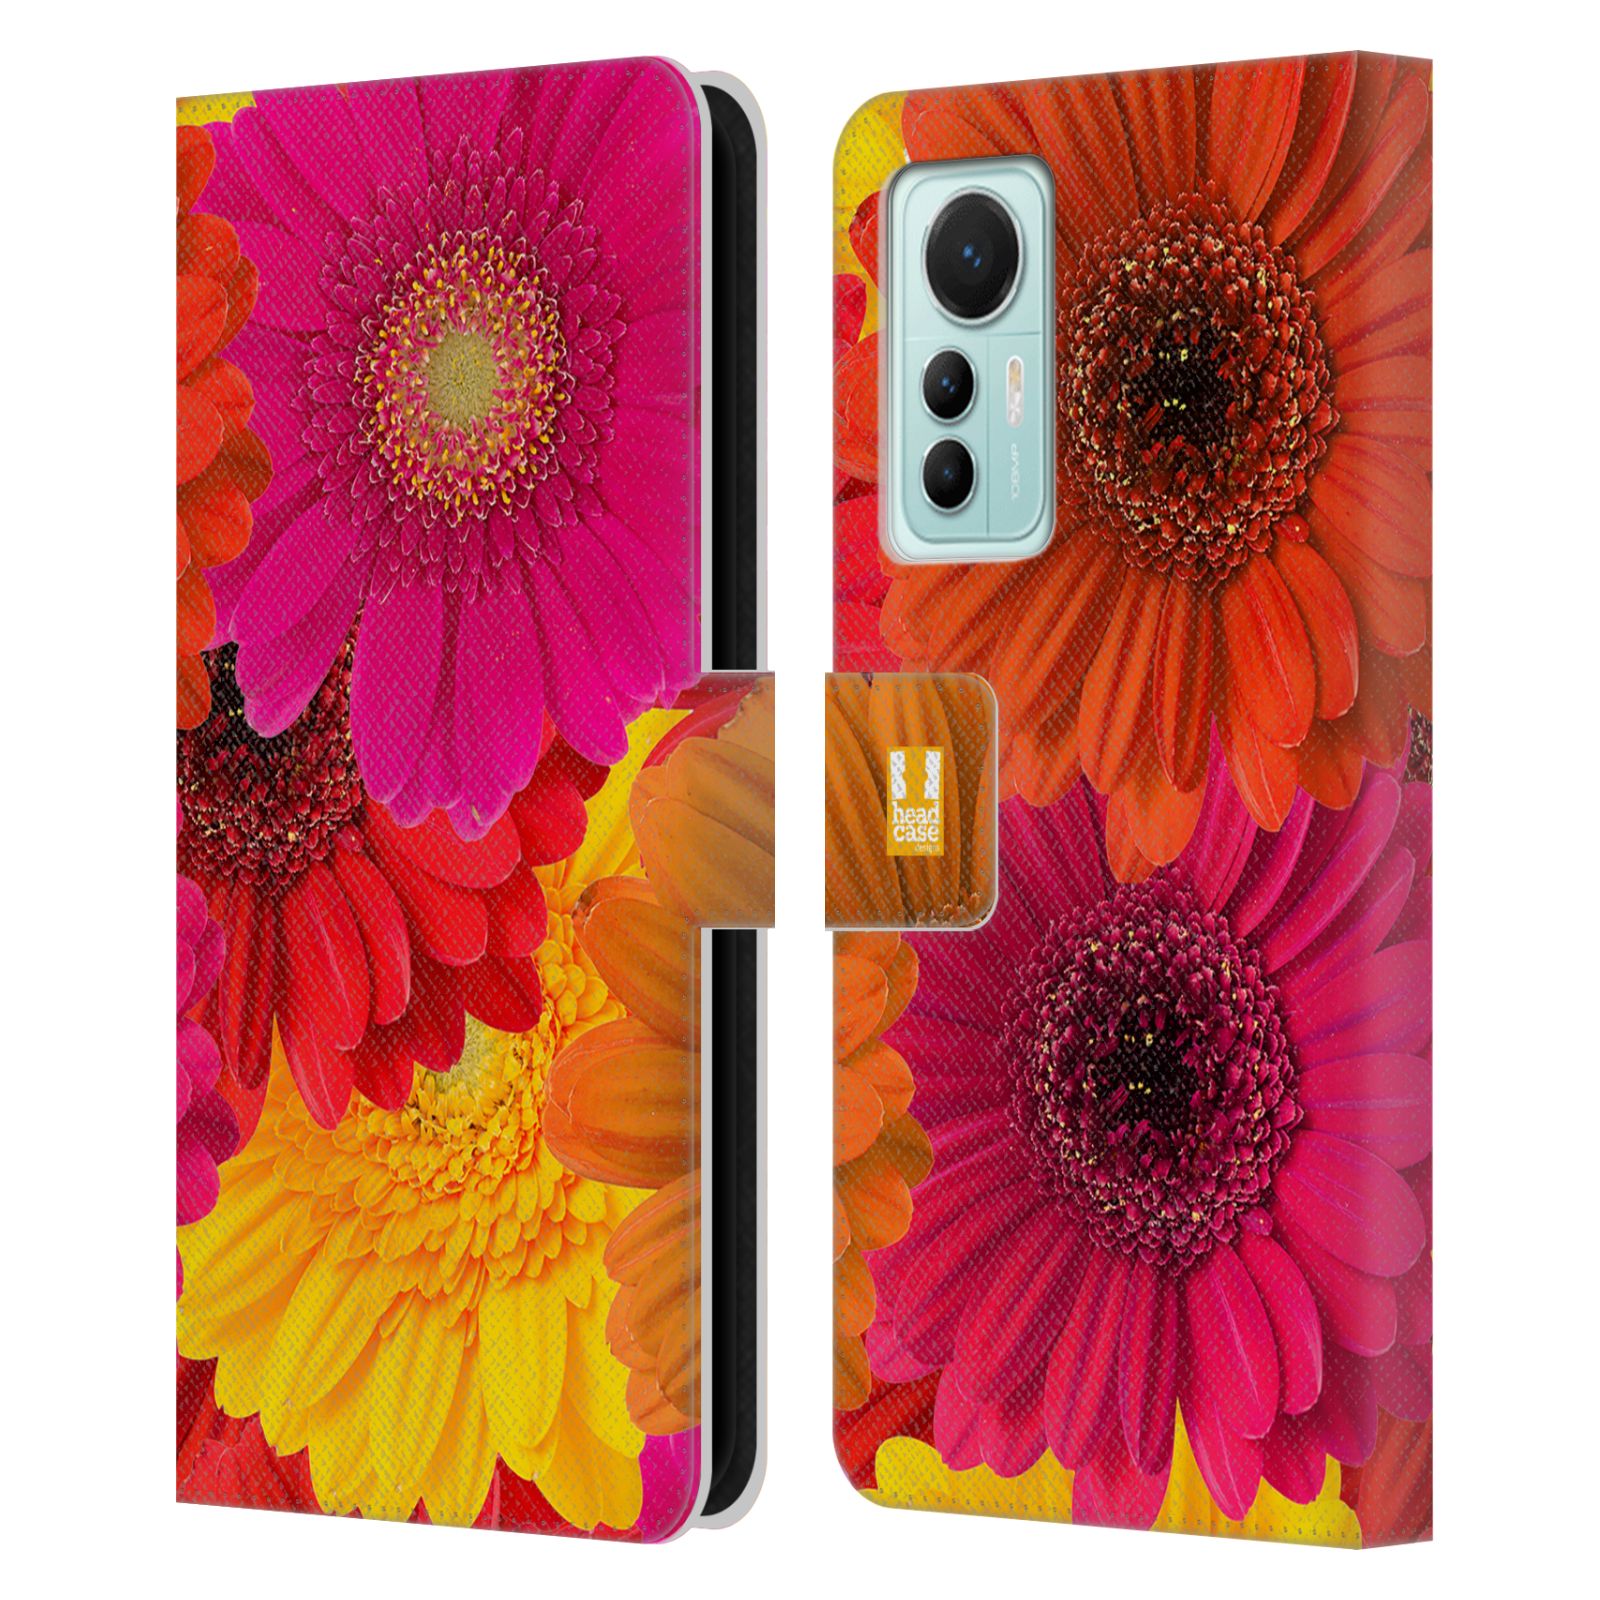 Pouzdro HEAD CASE na mobil Xiaomi 12 LITE květy foto fialová, oranžová GERBERA